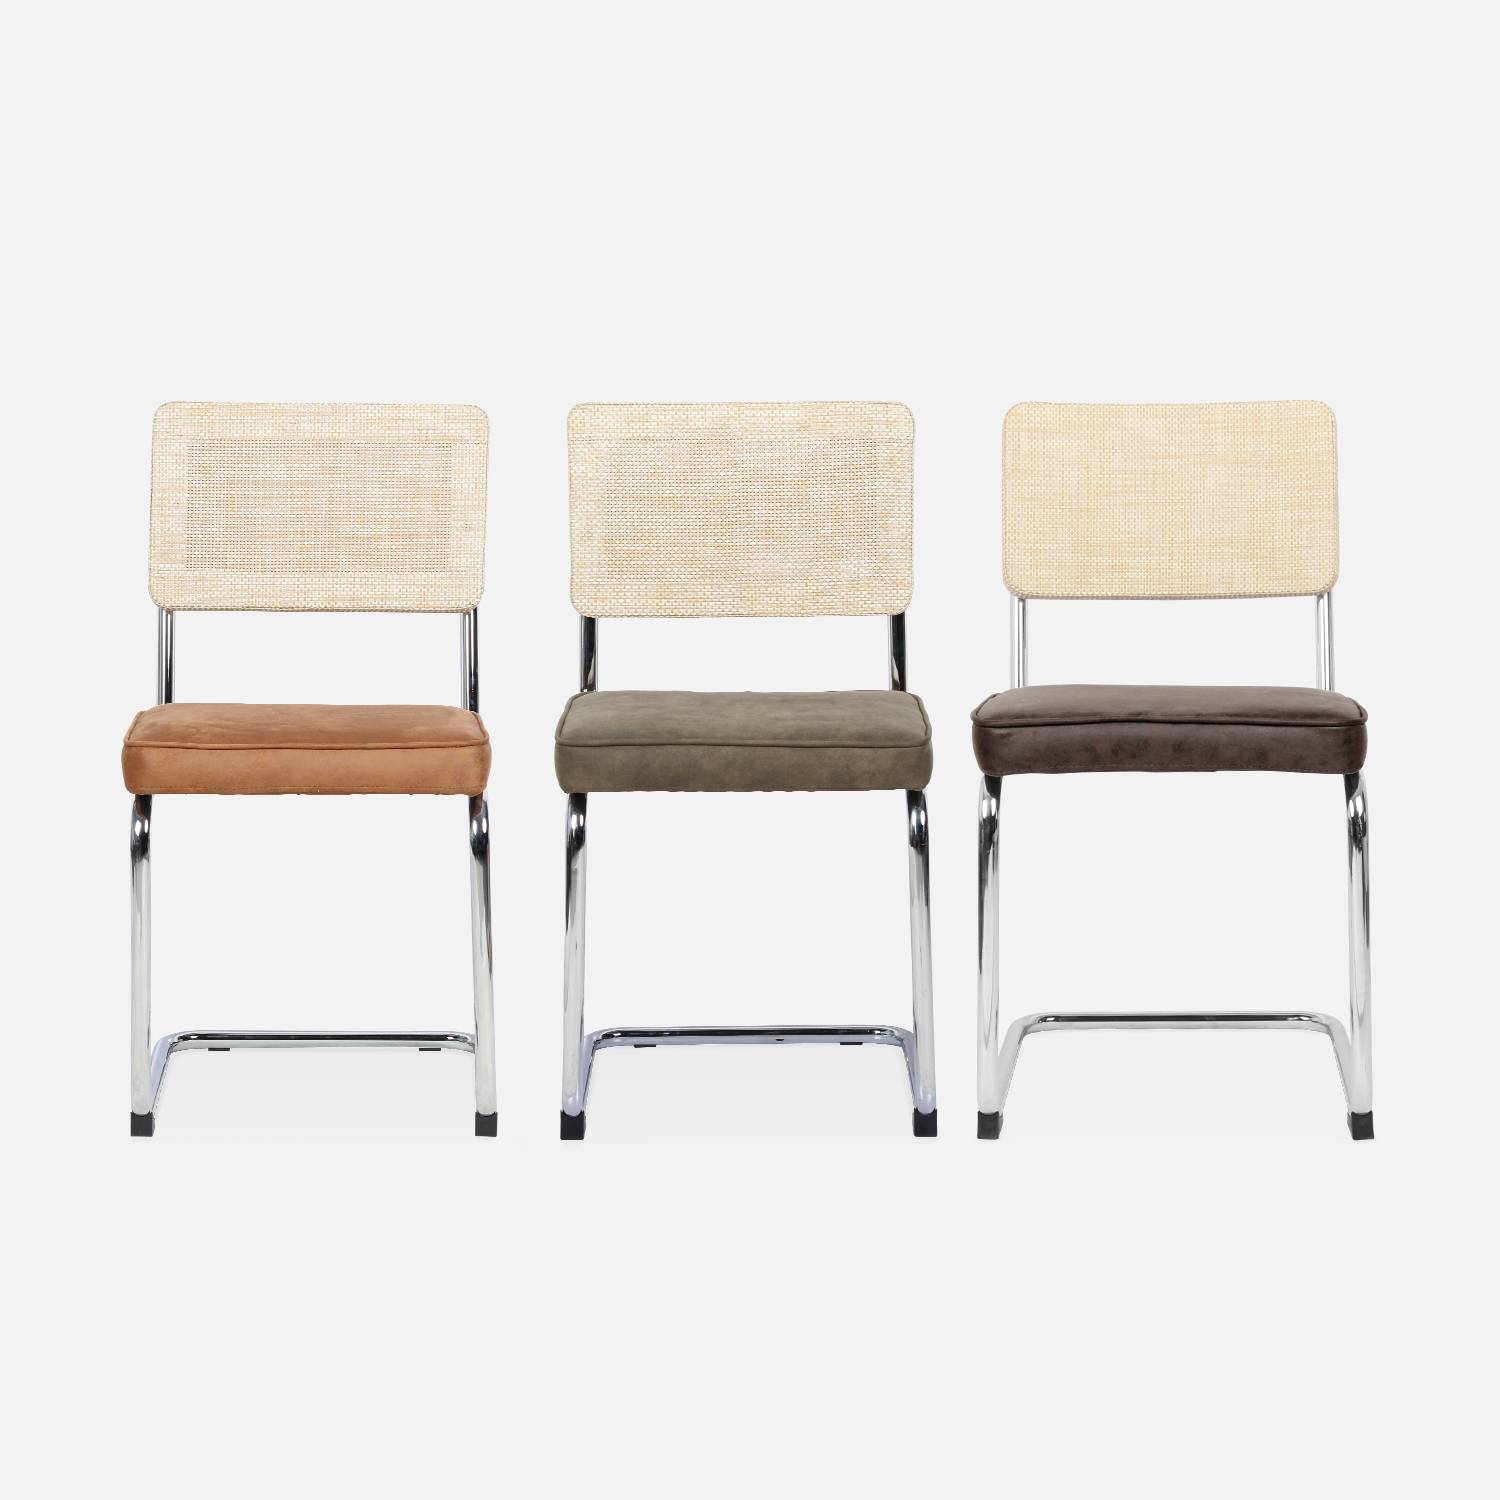 2 sillas cantilever - Maja - tela marrón claro y resina efecto ratán, 46 x 54,5 x 84,5cm   Photo7